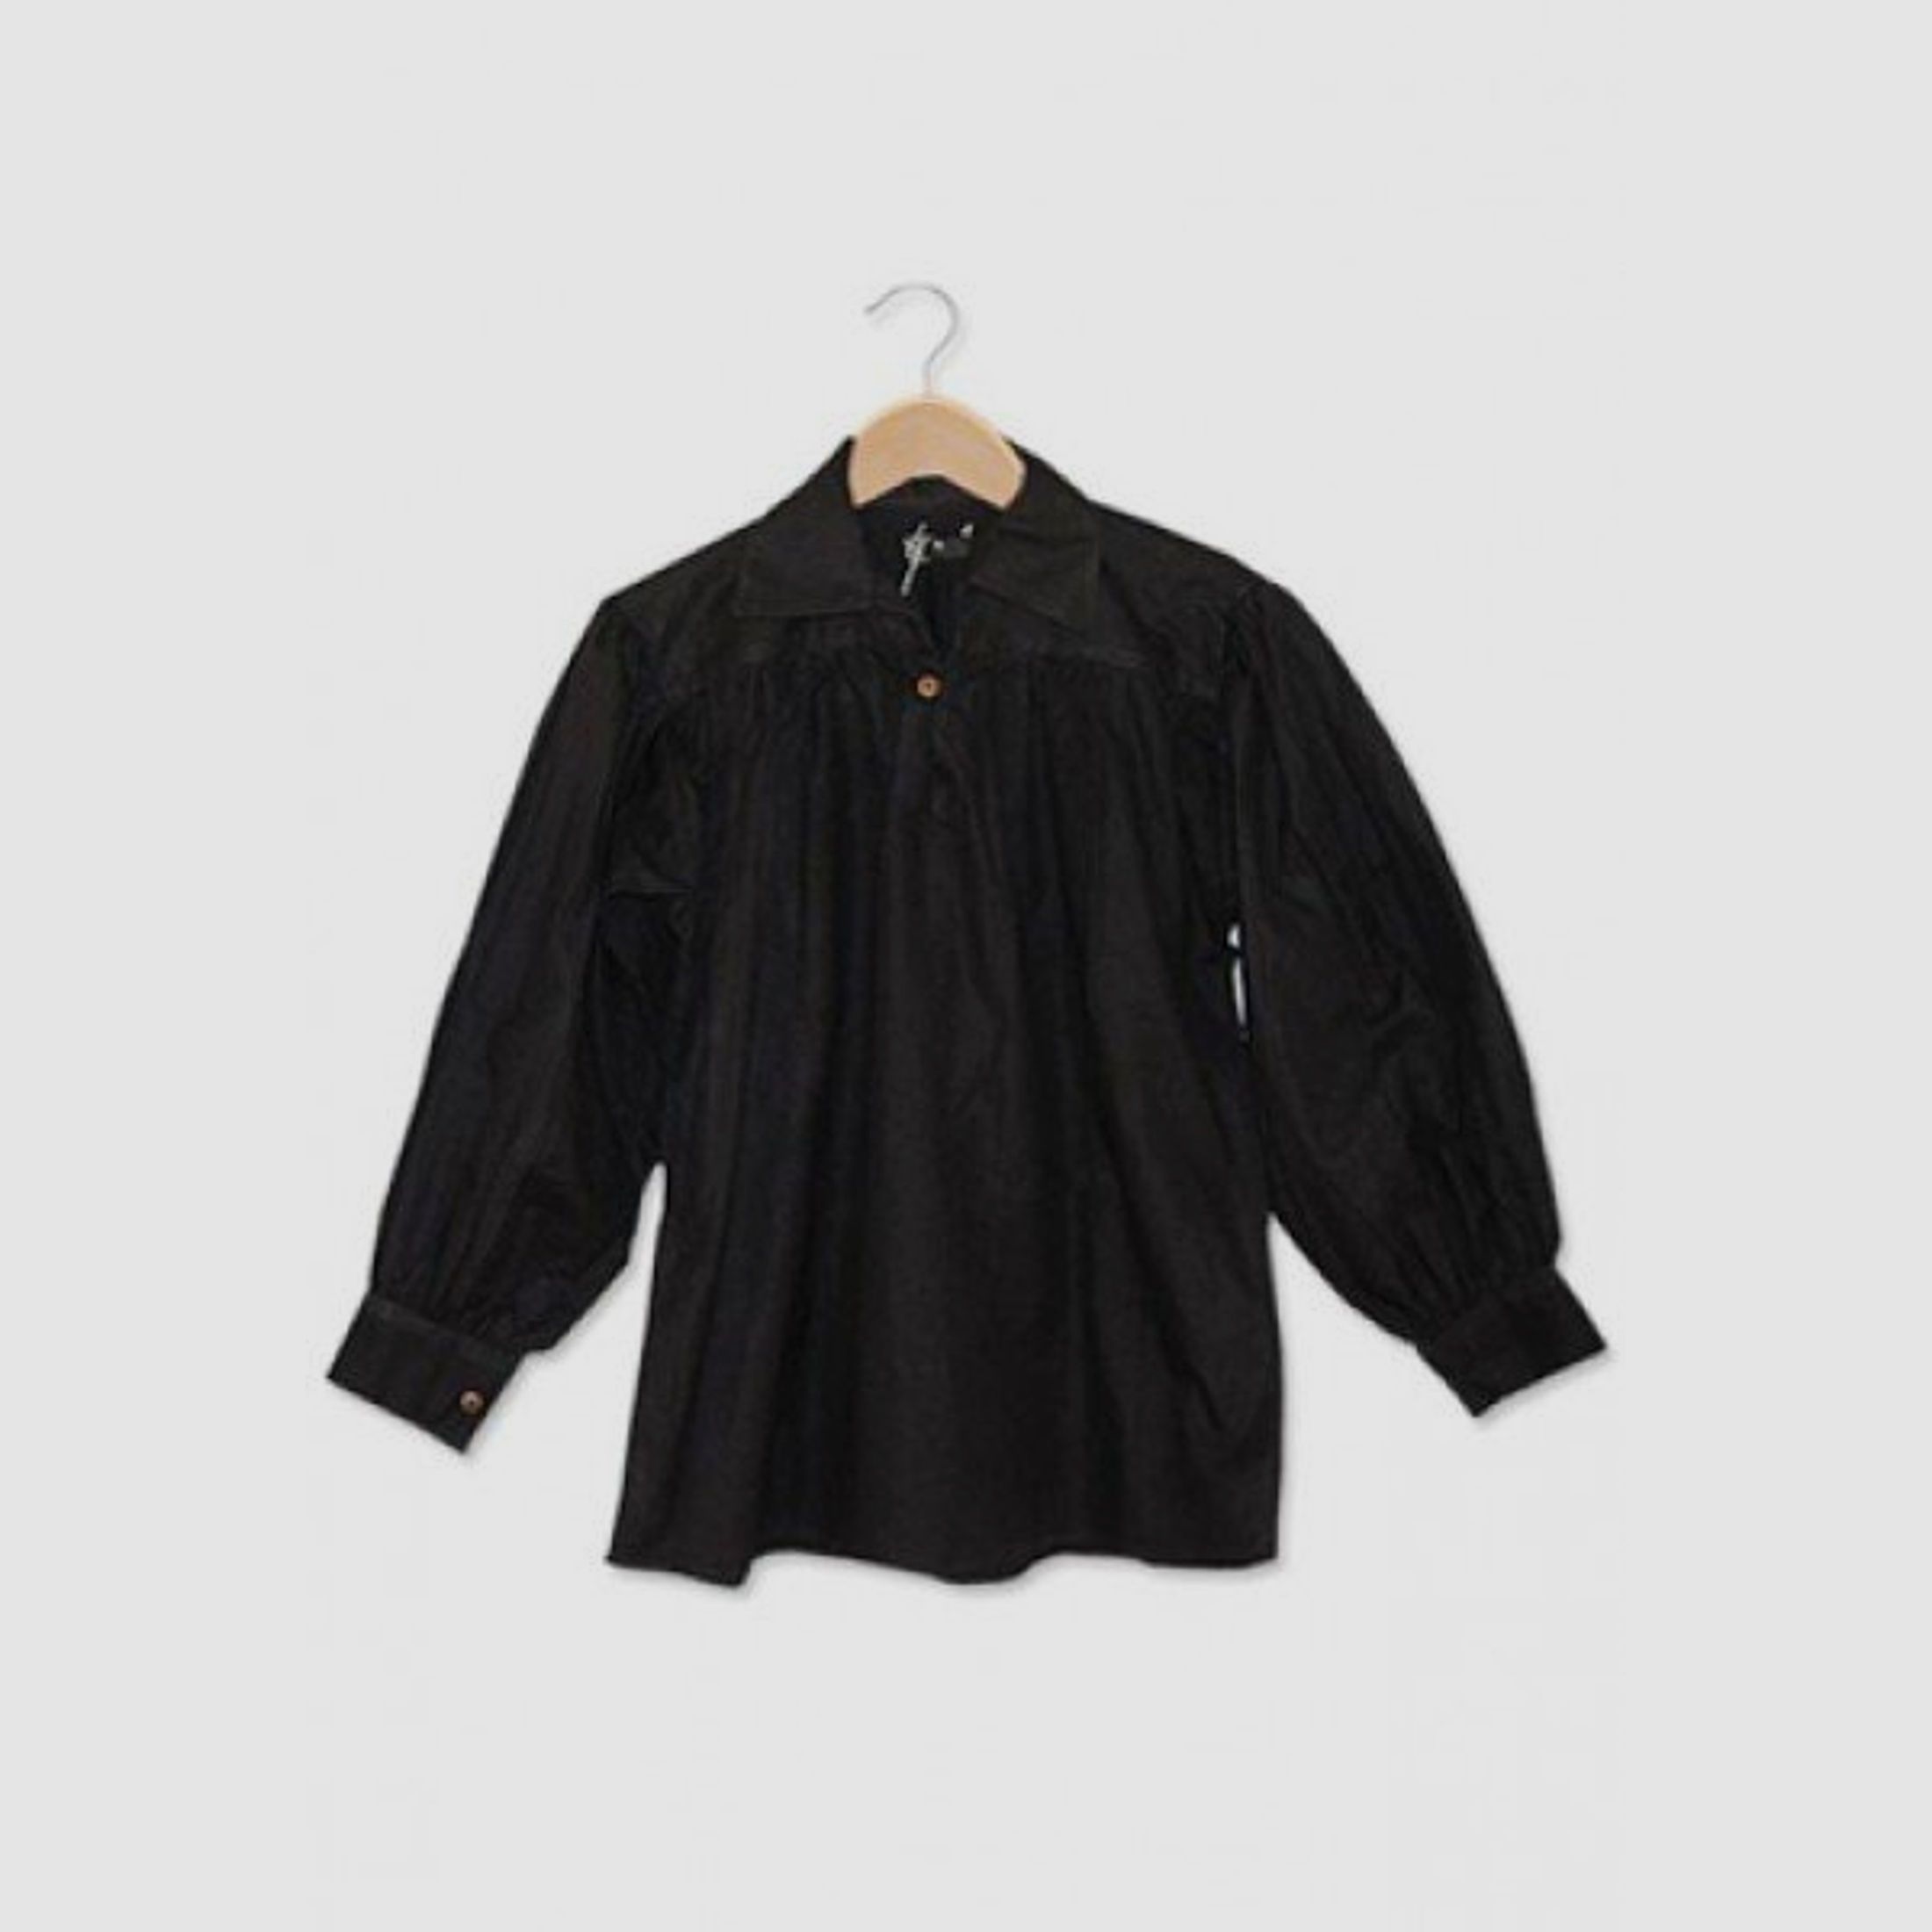 Baumwollhemd mit Kragen und Knopf Ausschnitt - schwarz, Größe XXL | 71461XXL